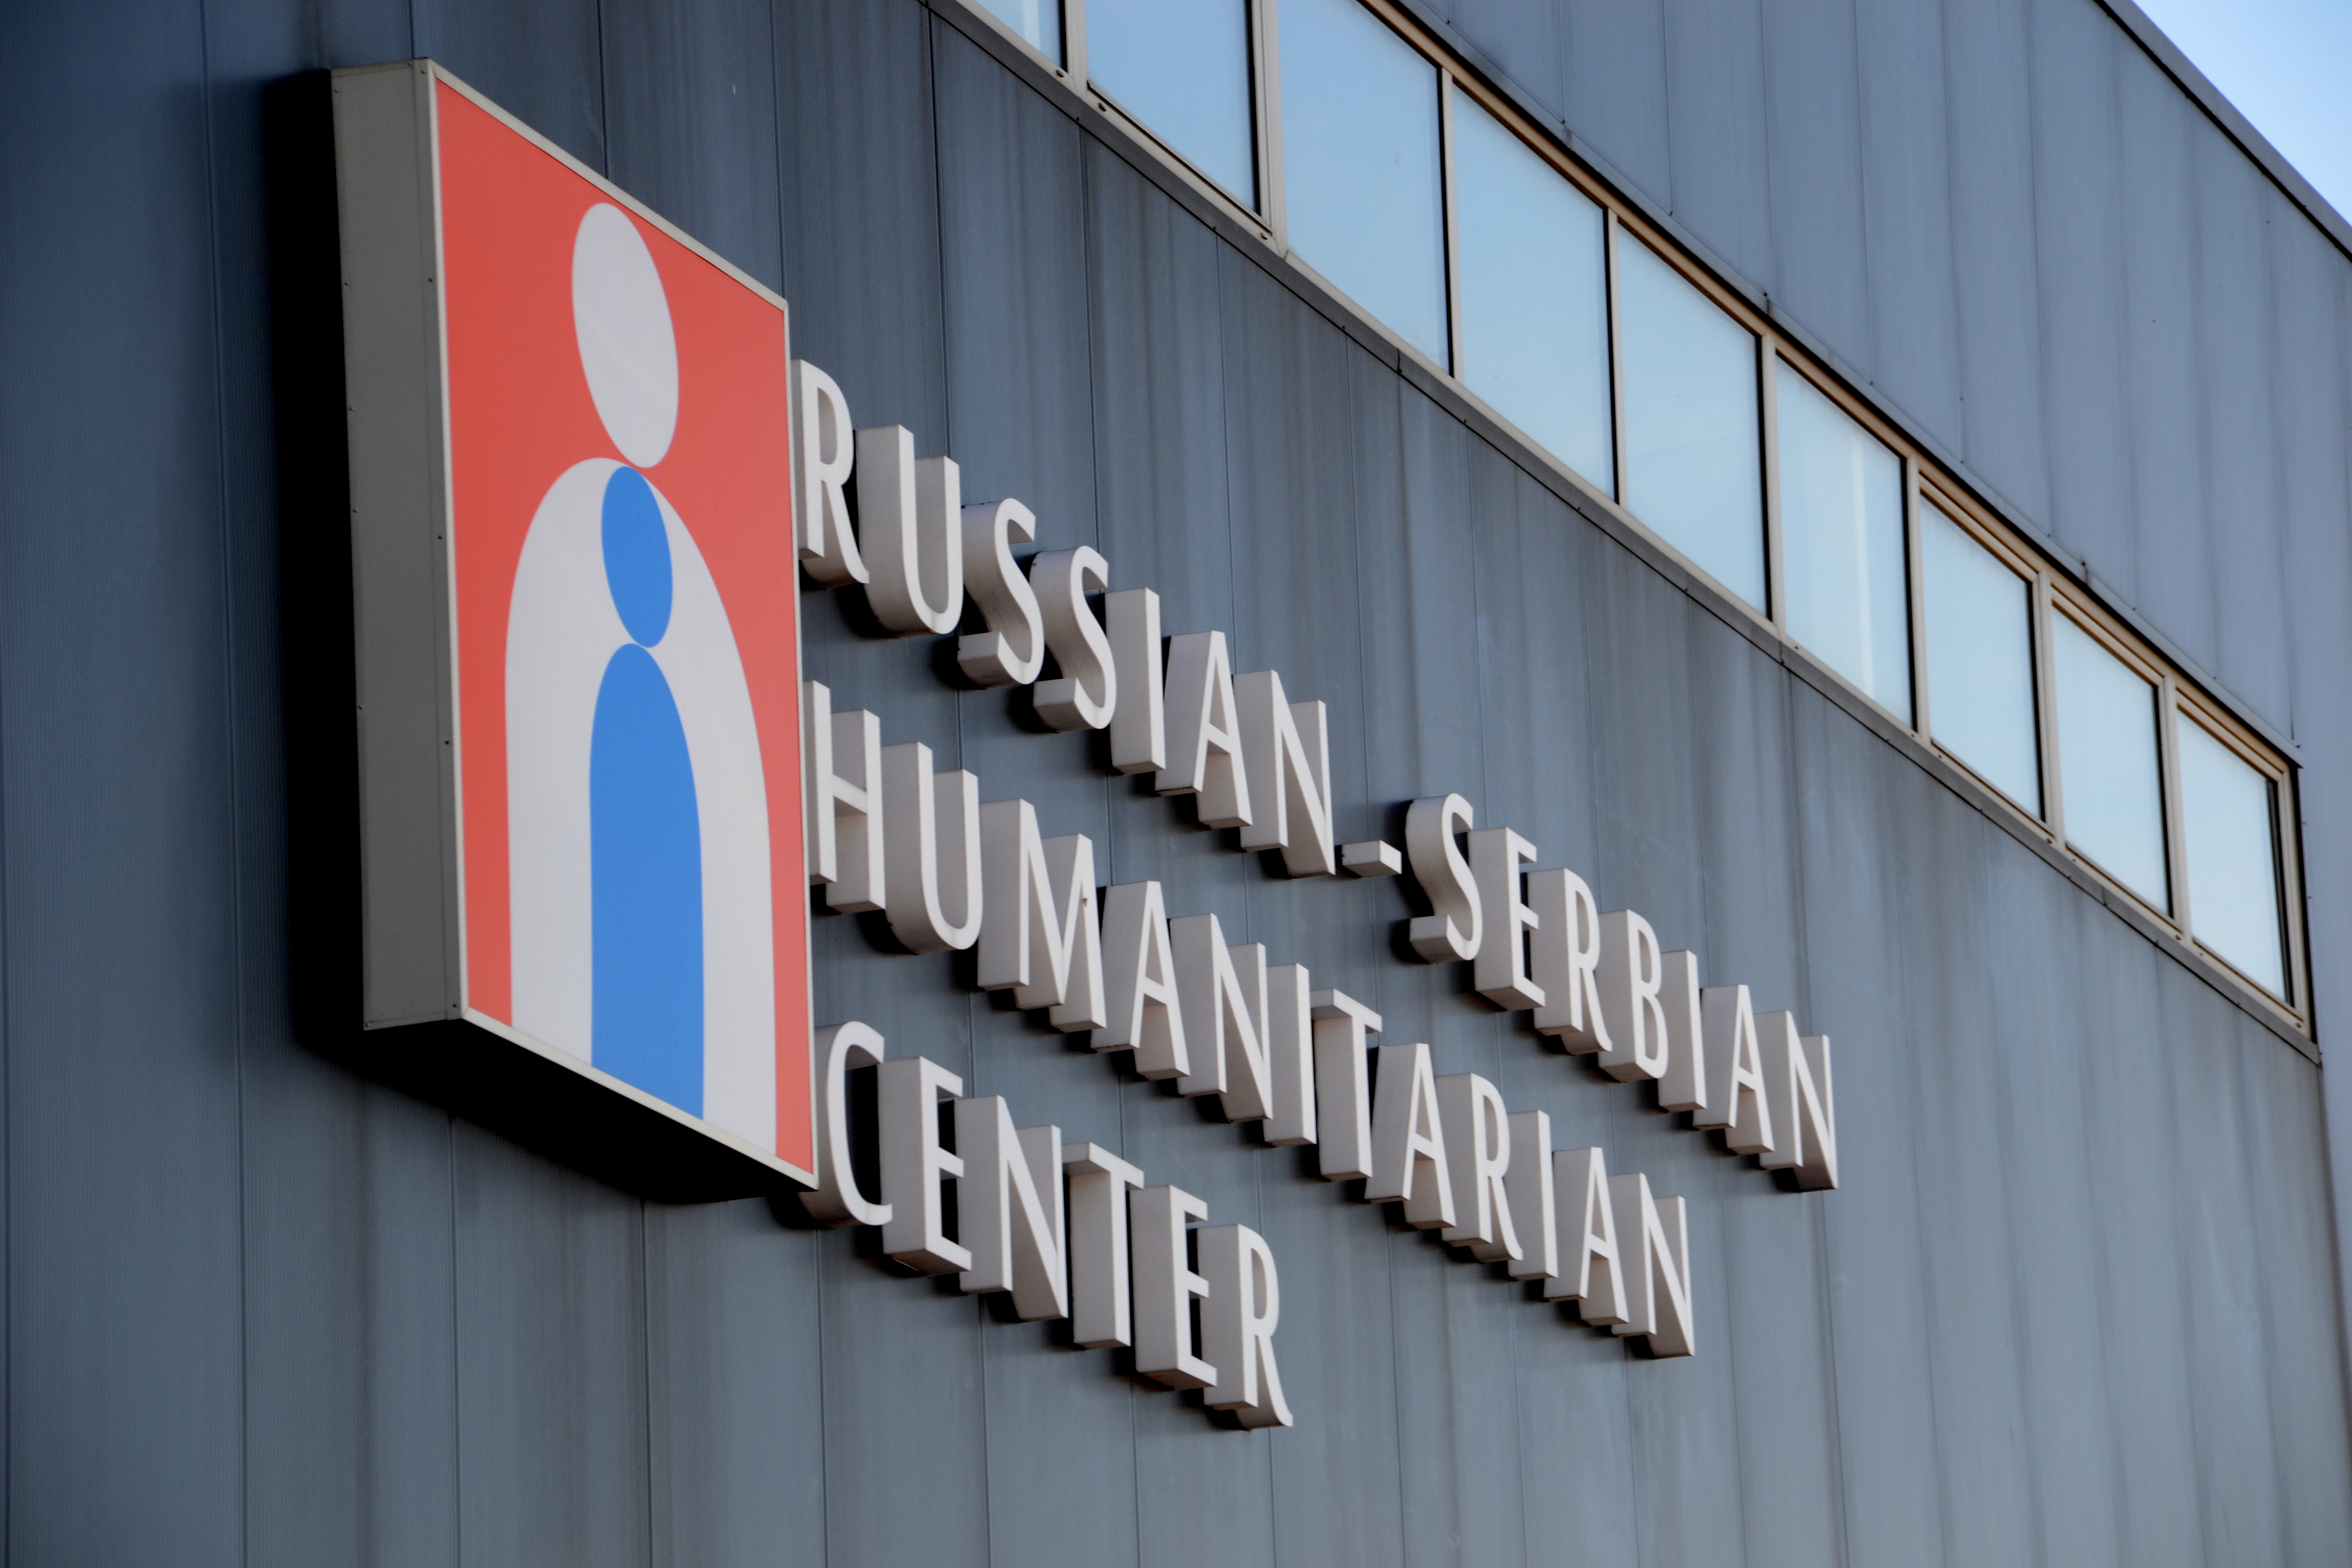 Српско-руски хуманитарни центар у Нишу.